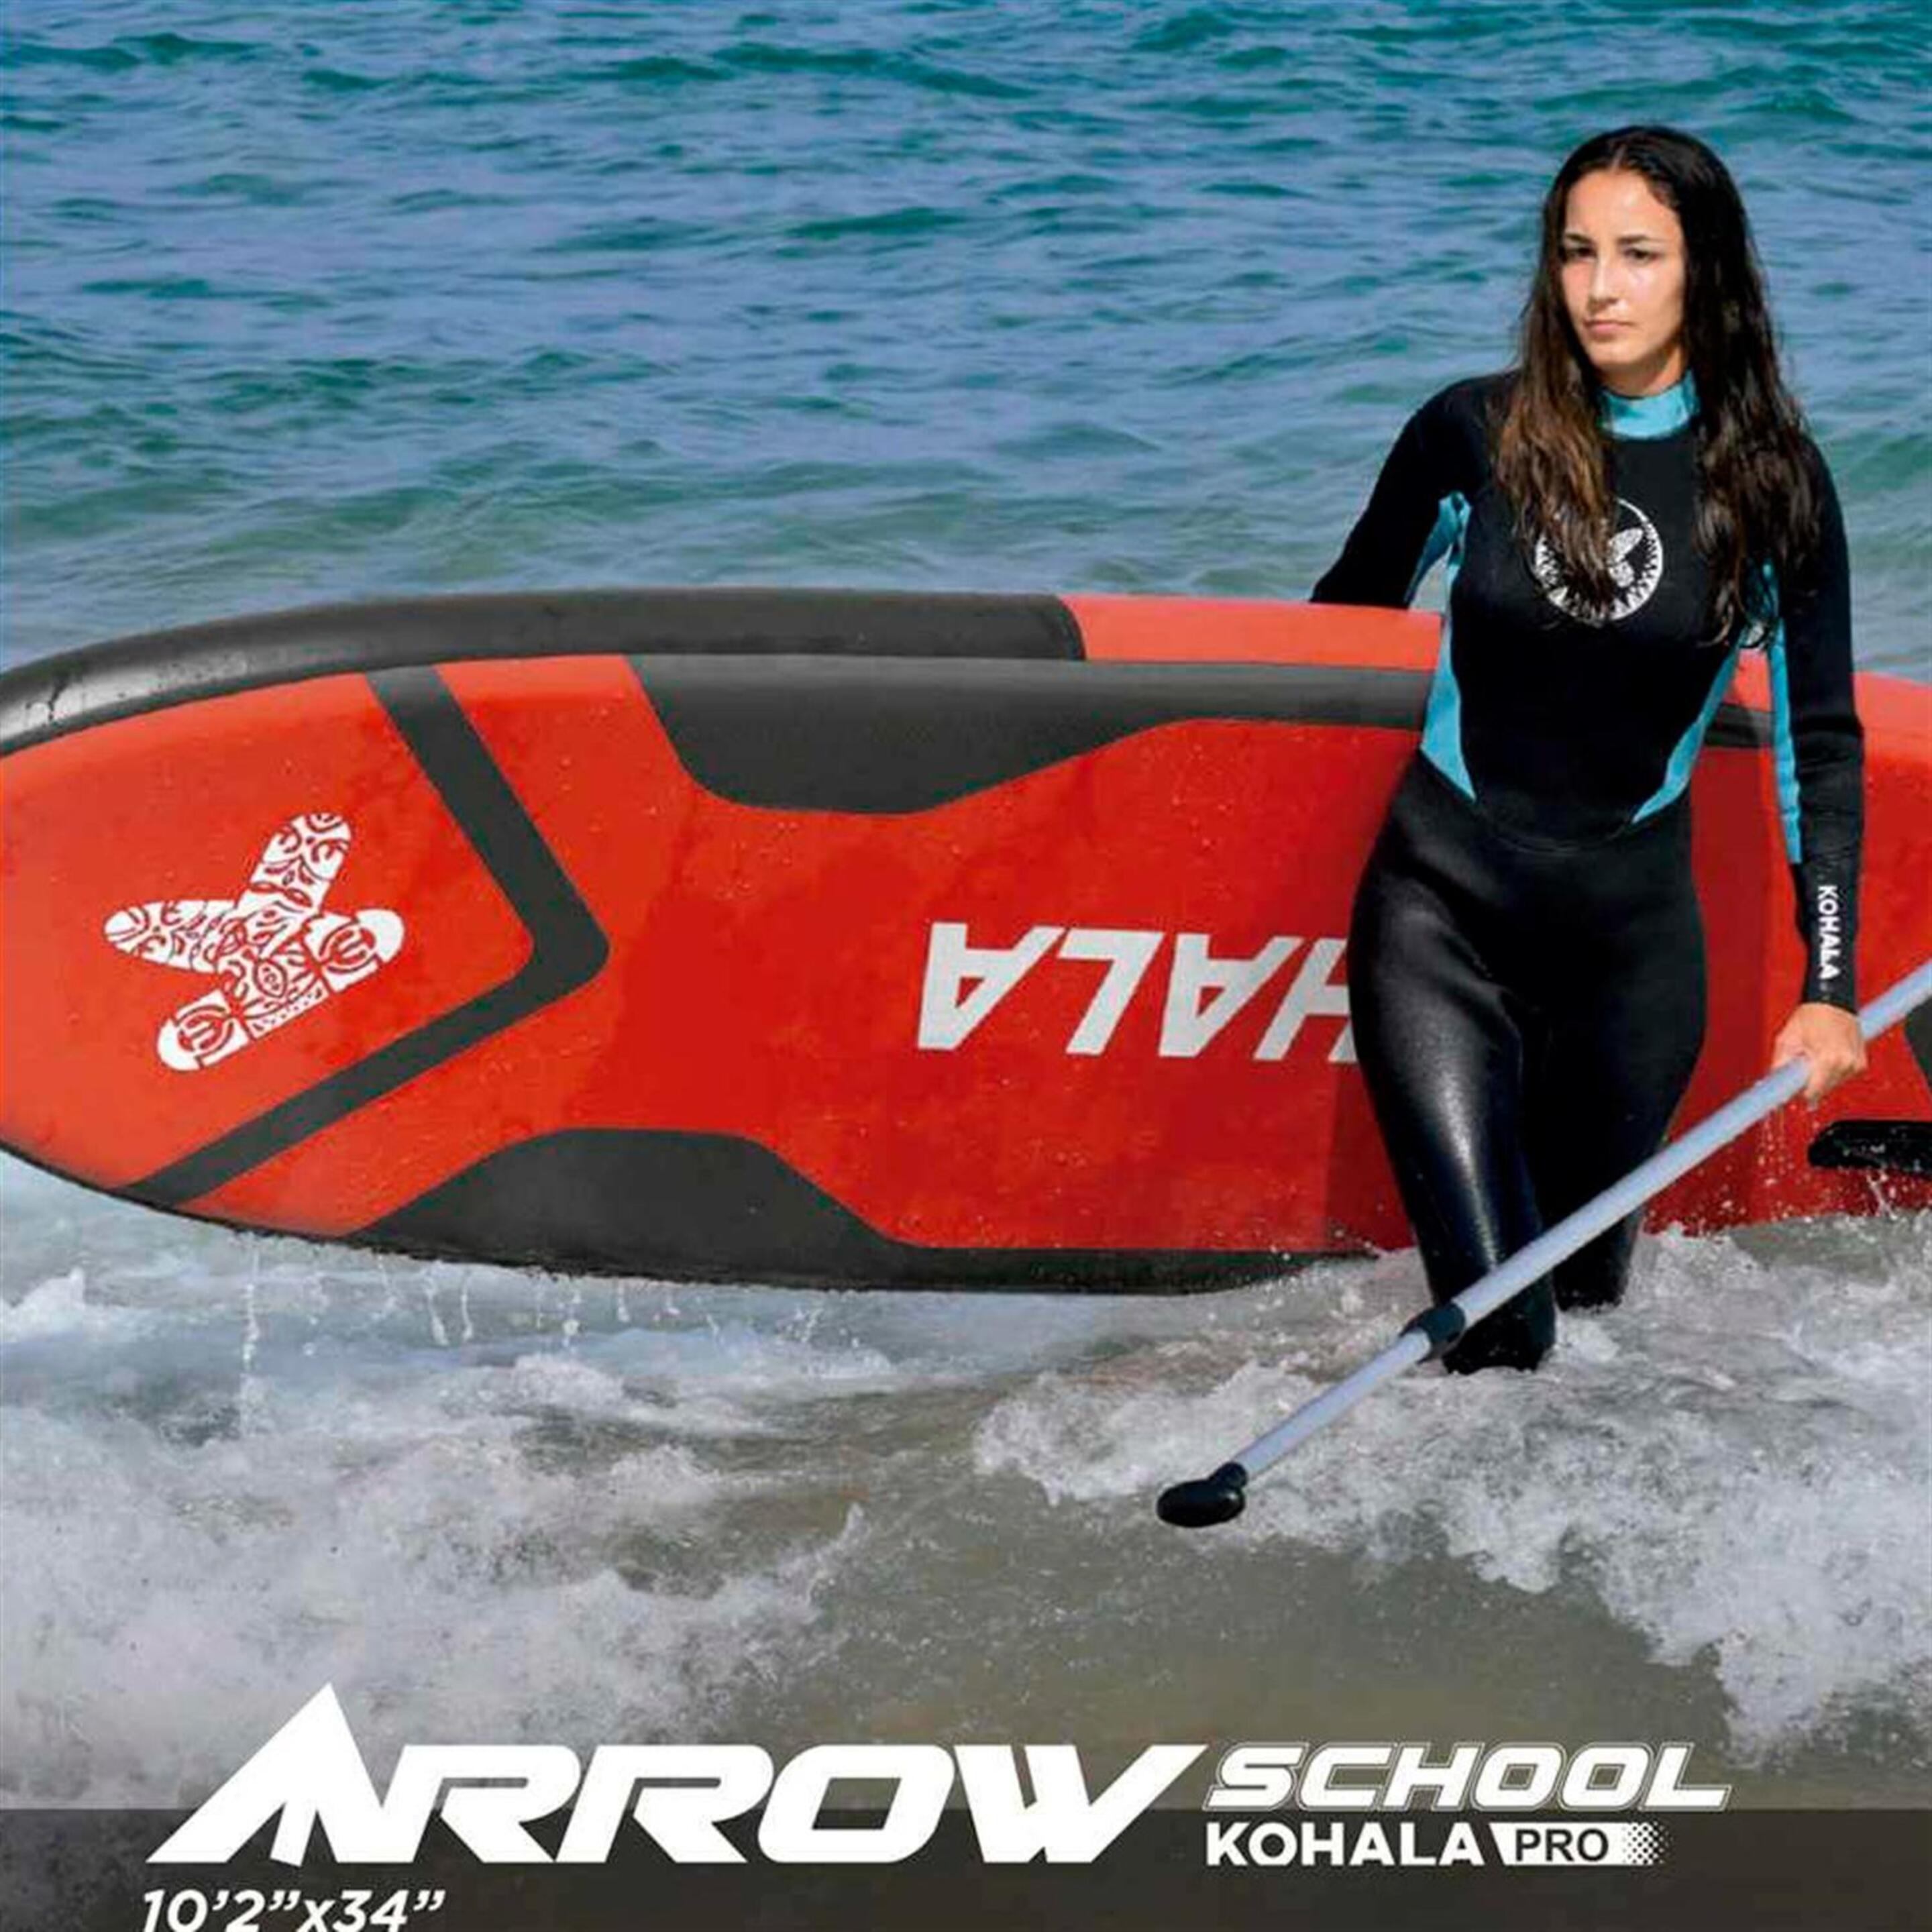 Tabla Paddle Surf Kohala Arrow School 10' 140Kg  MKP